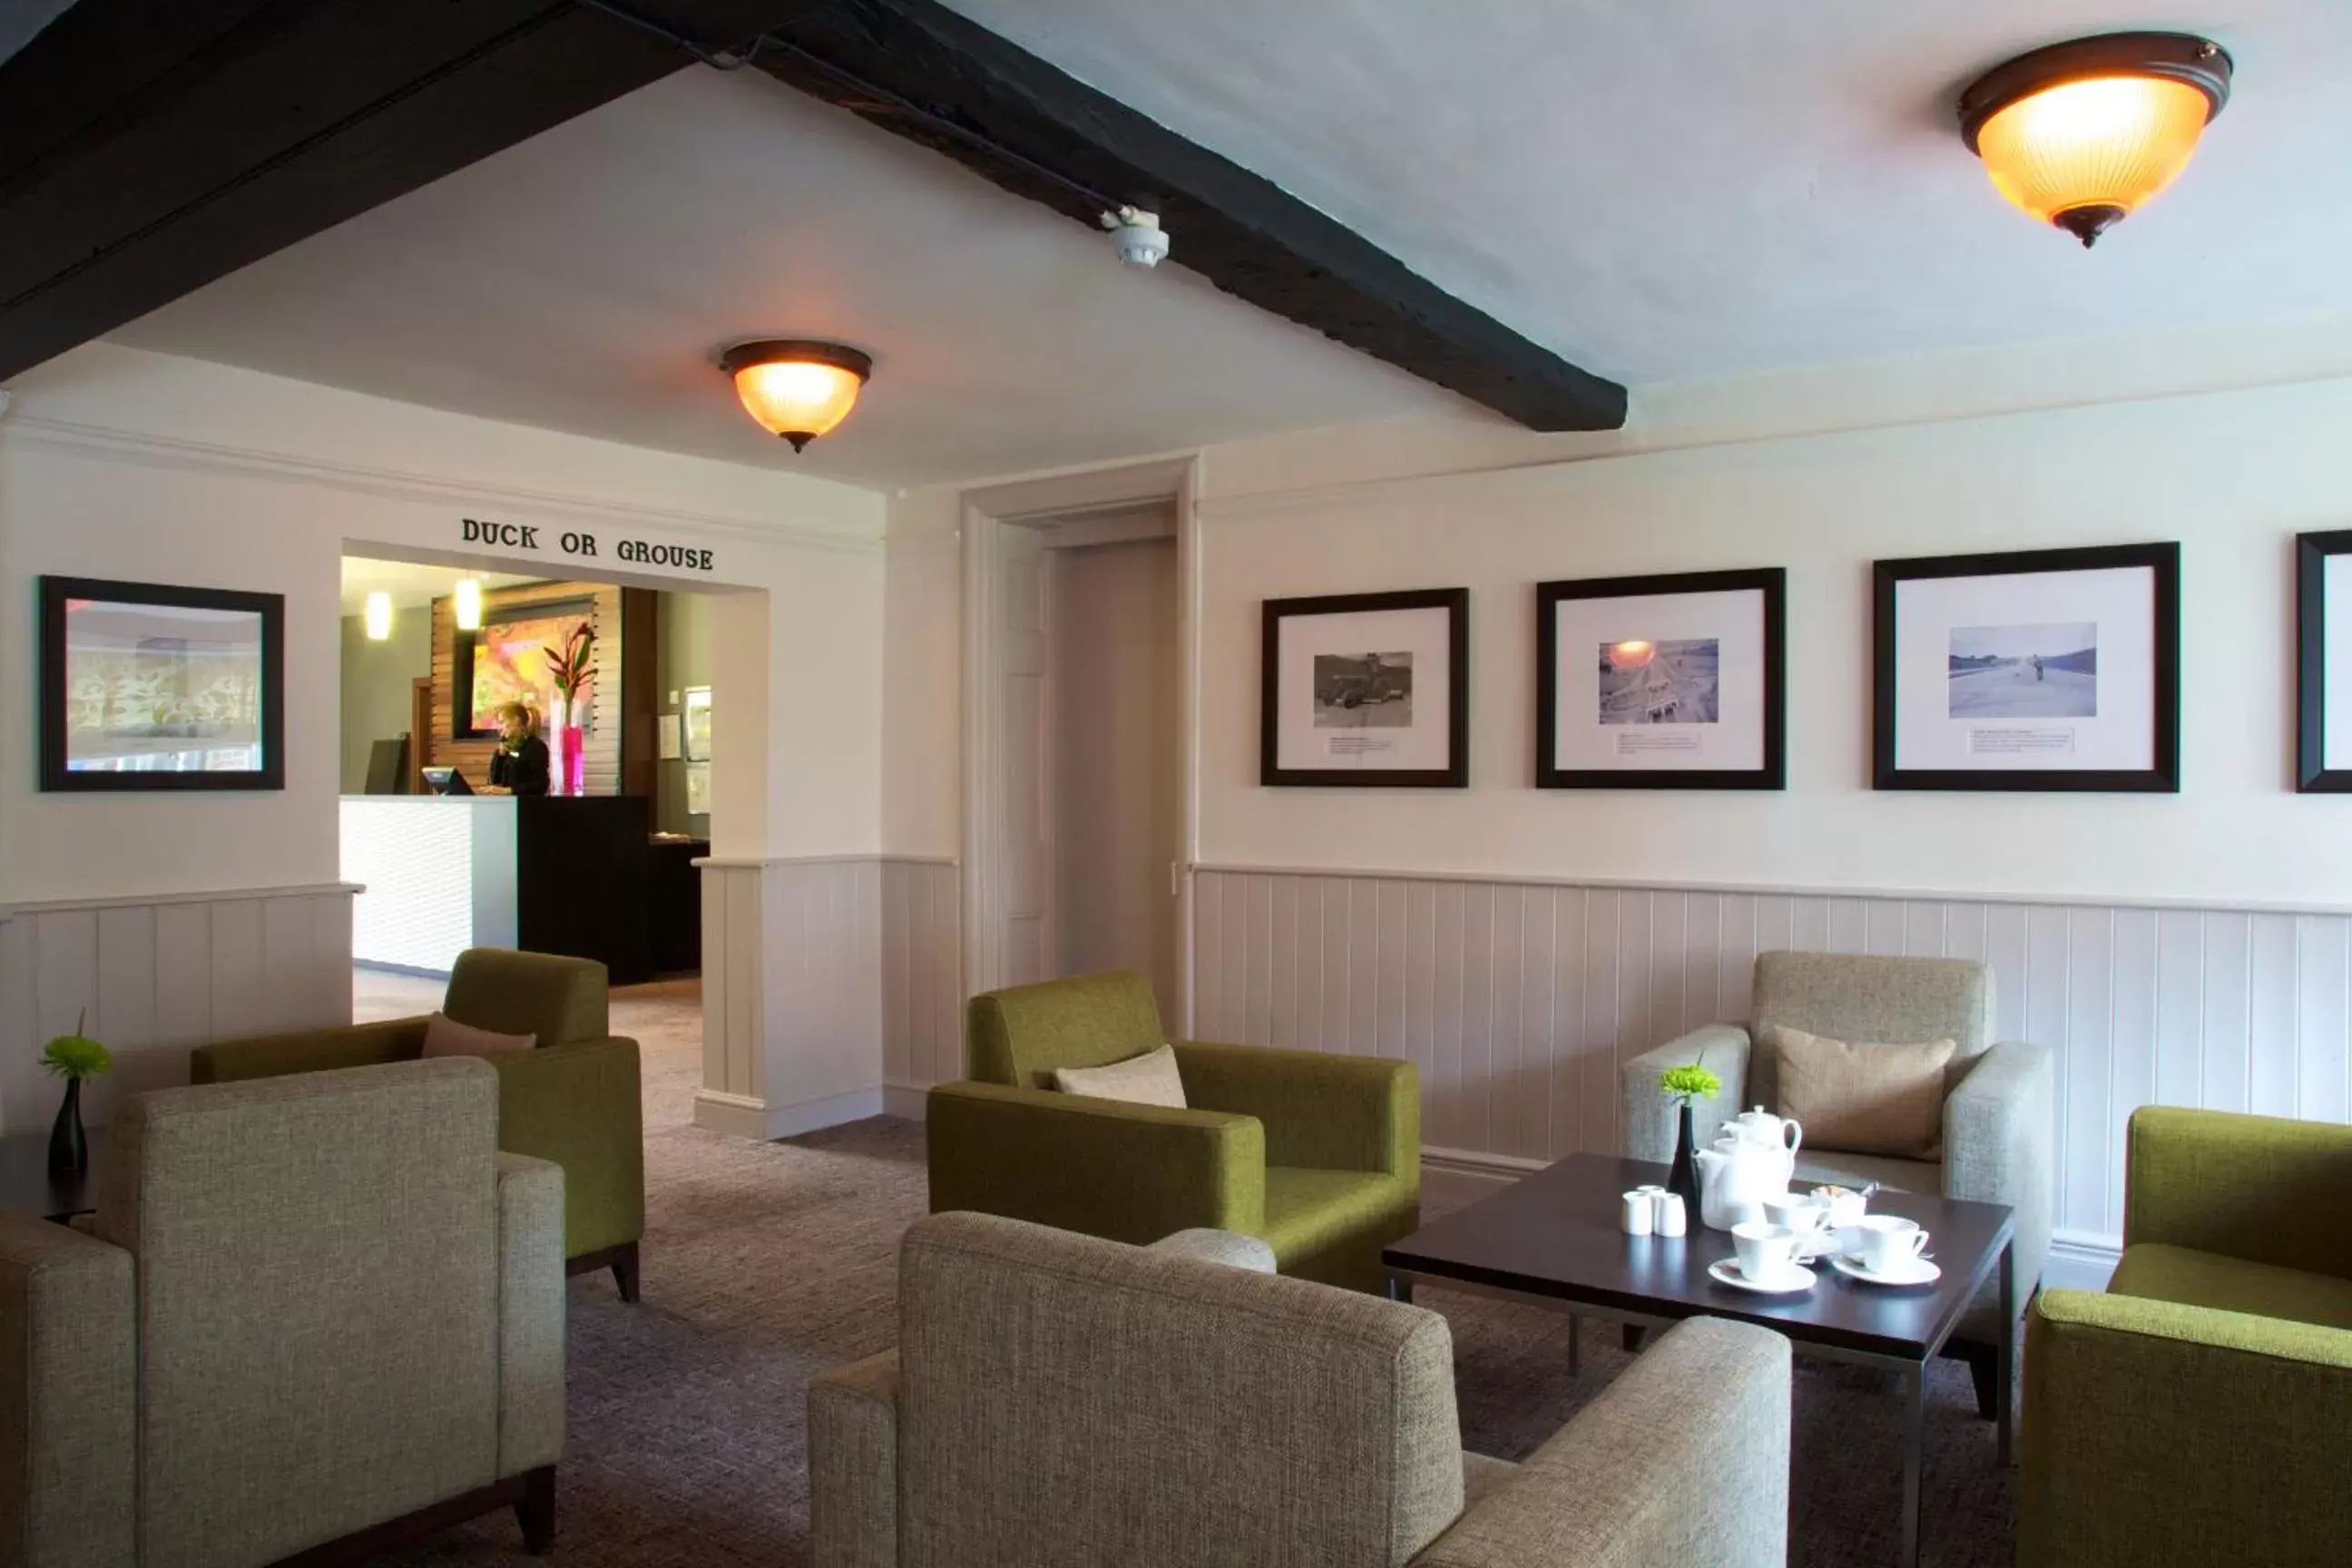 Lobby or reception in Aubrey Park Hotel